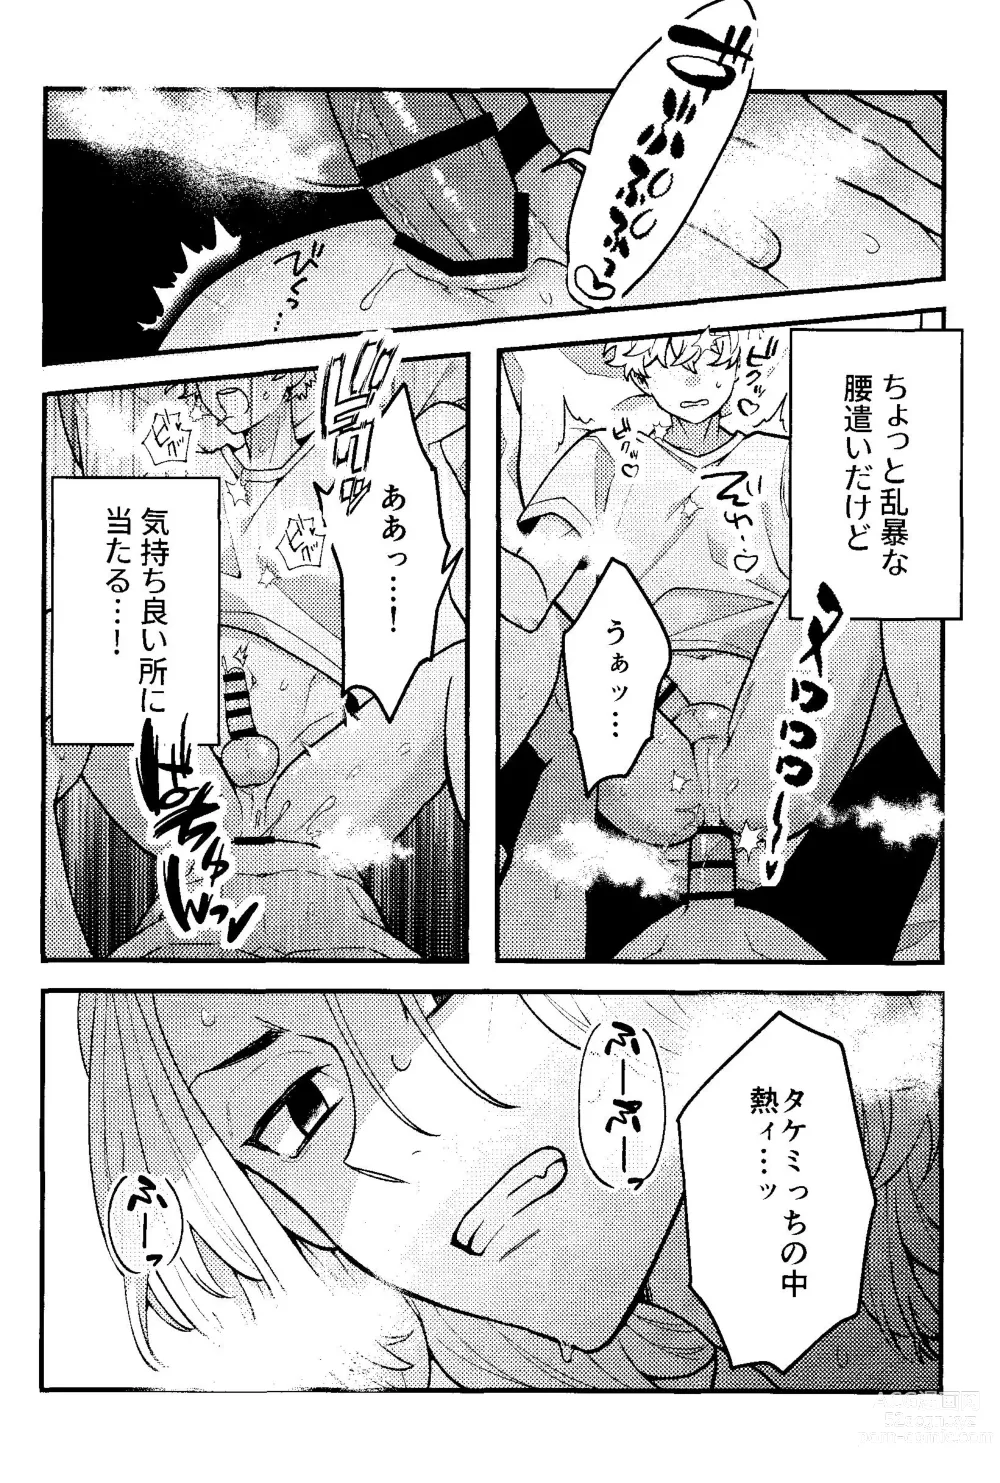 Page 21 of doujinshi Jitsuwa kaihatsu sumidesu